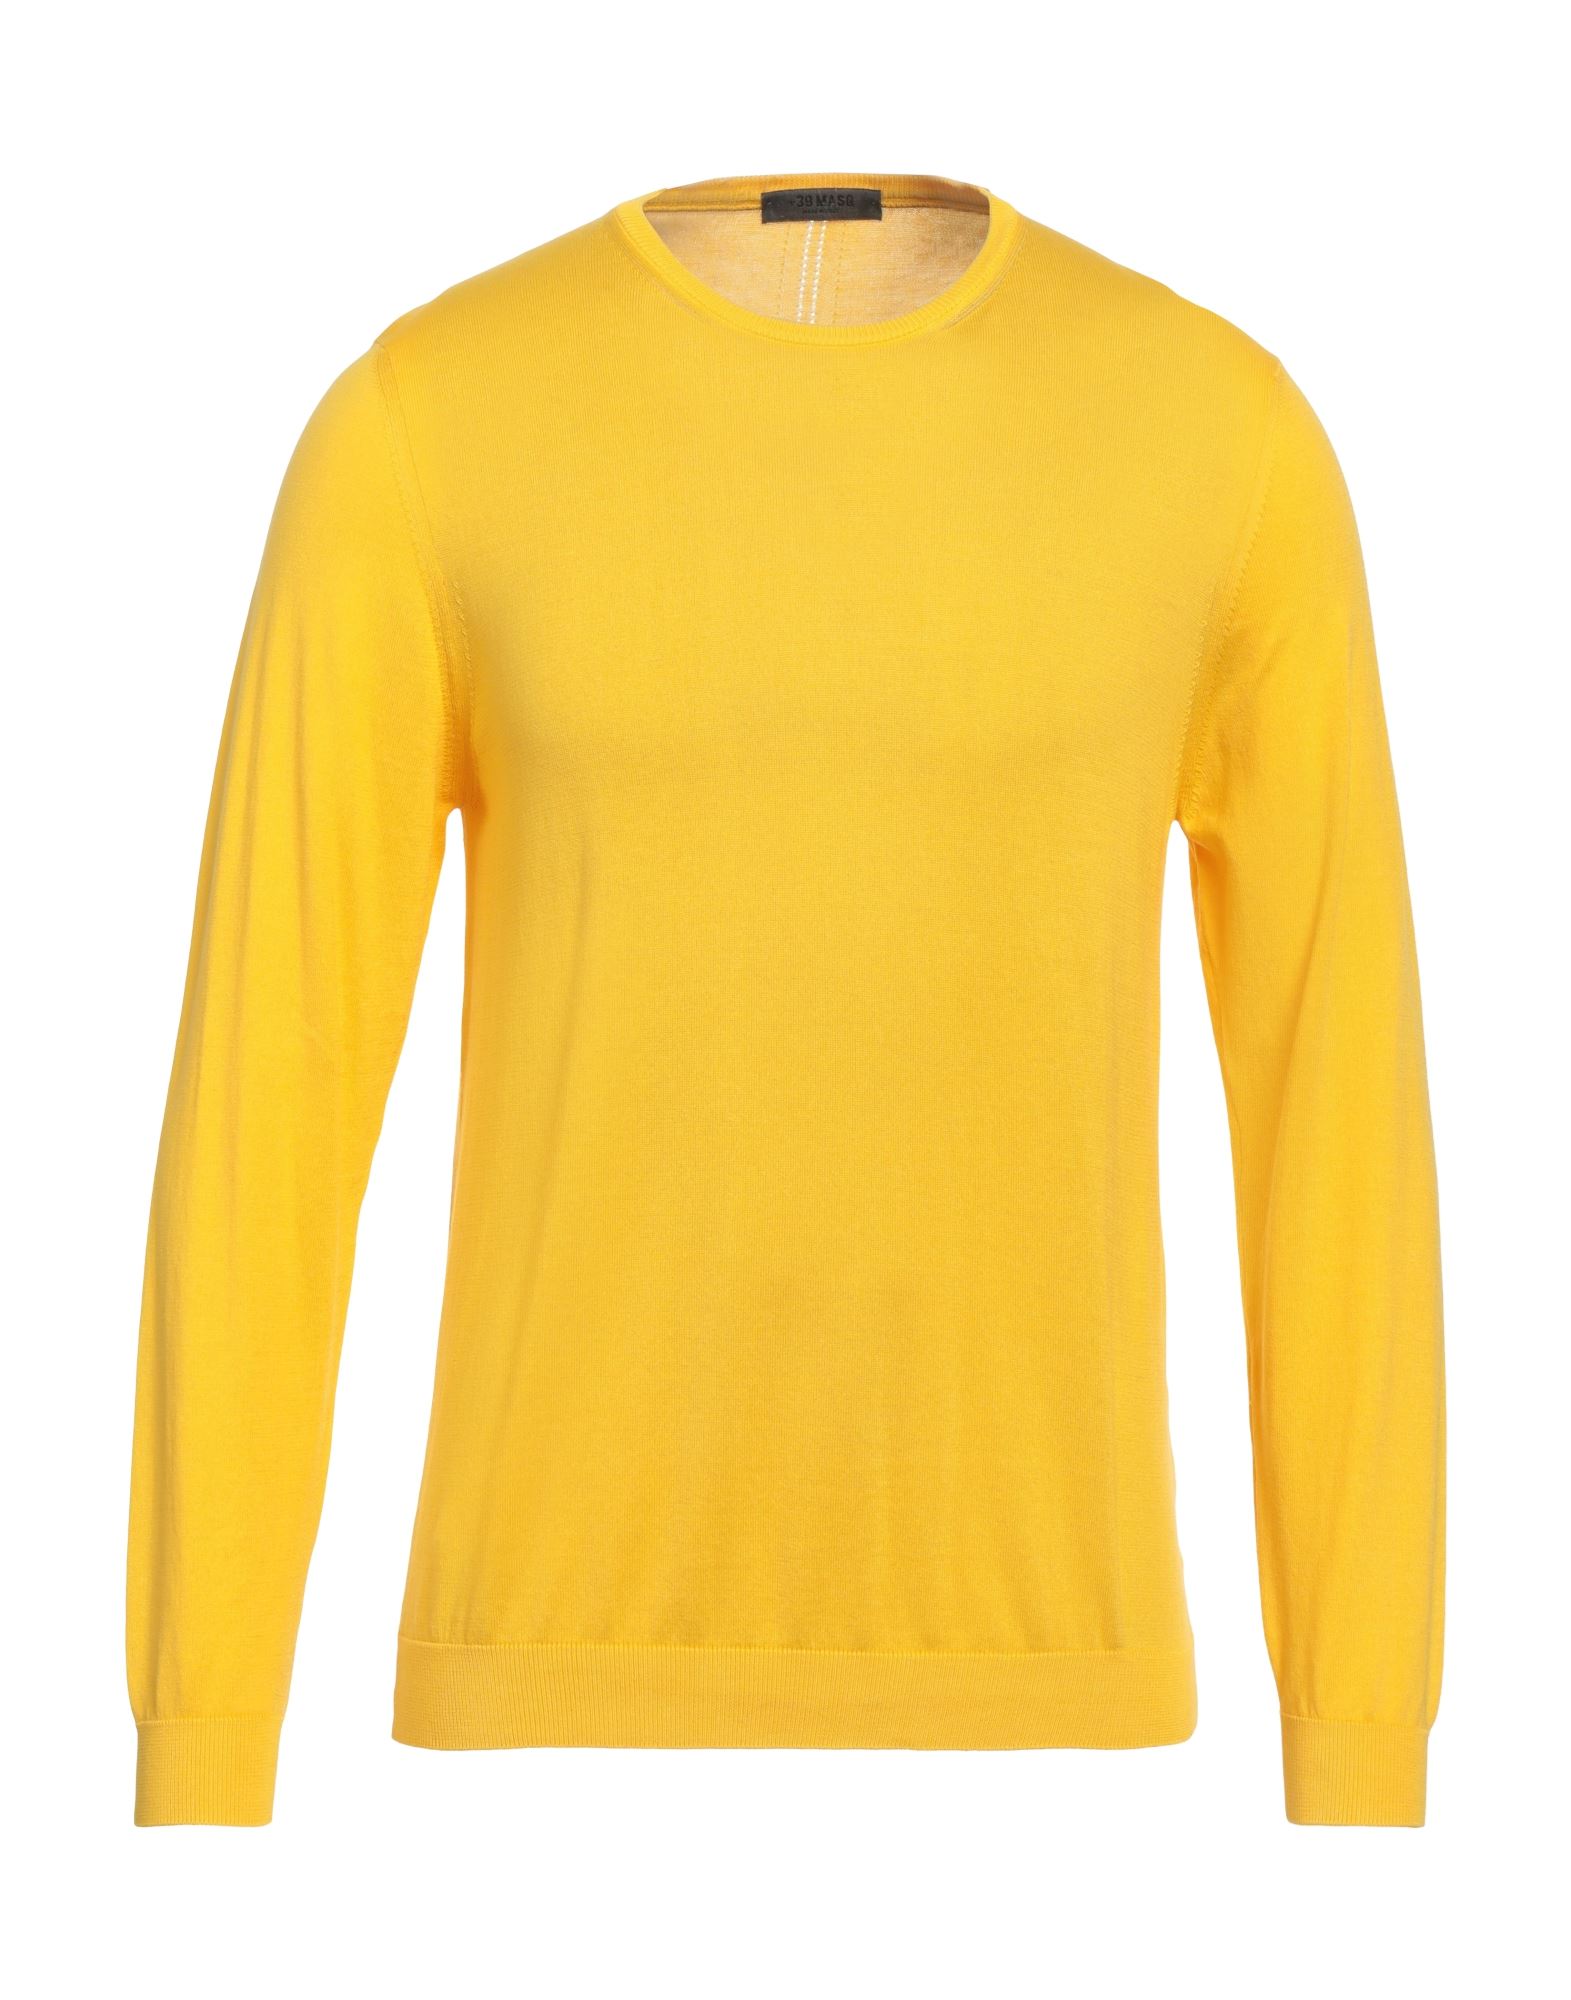 +39 Masq Man Sweater Yellow Size Xxl Cotton